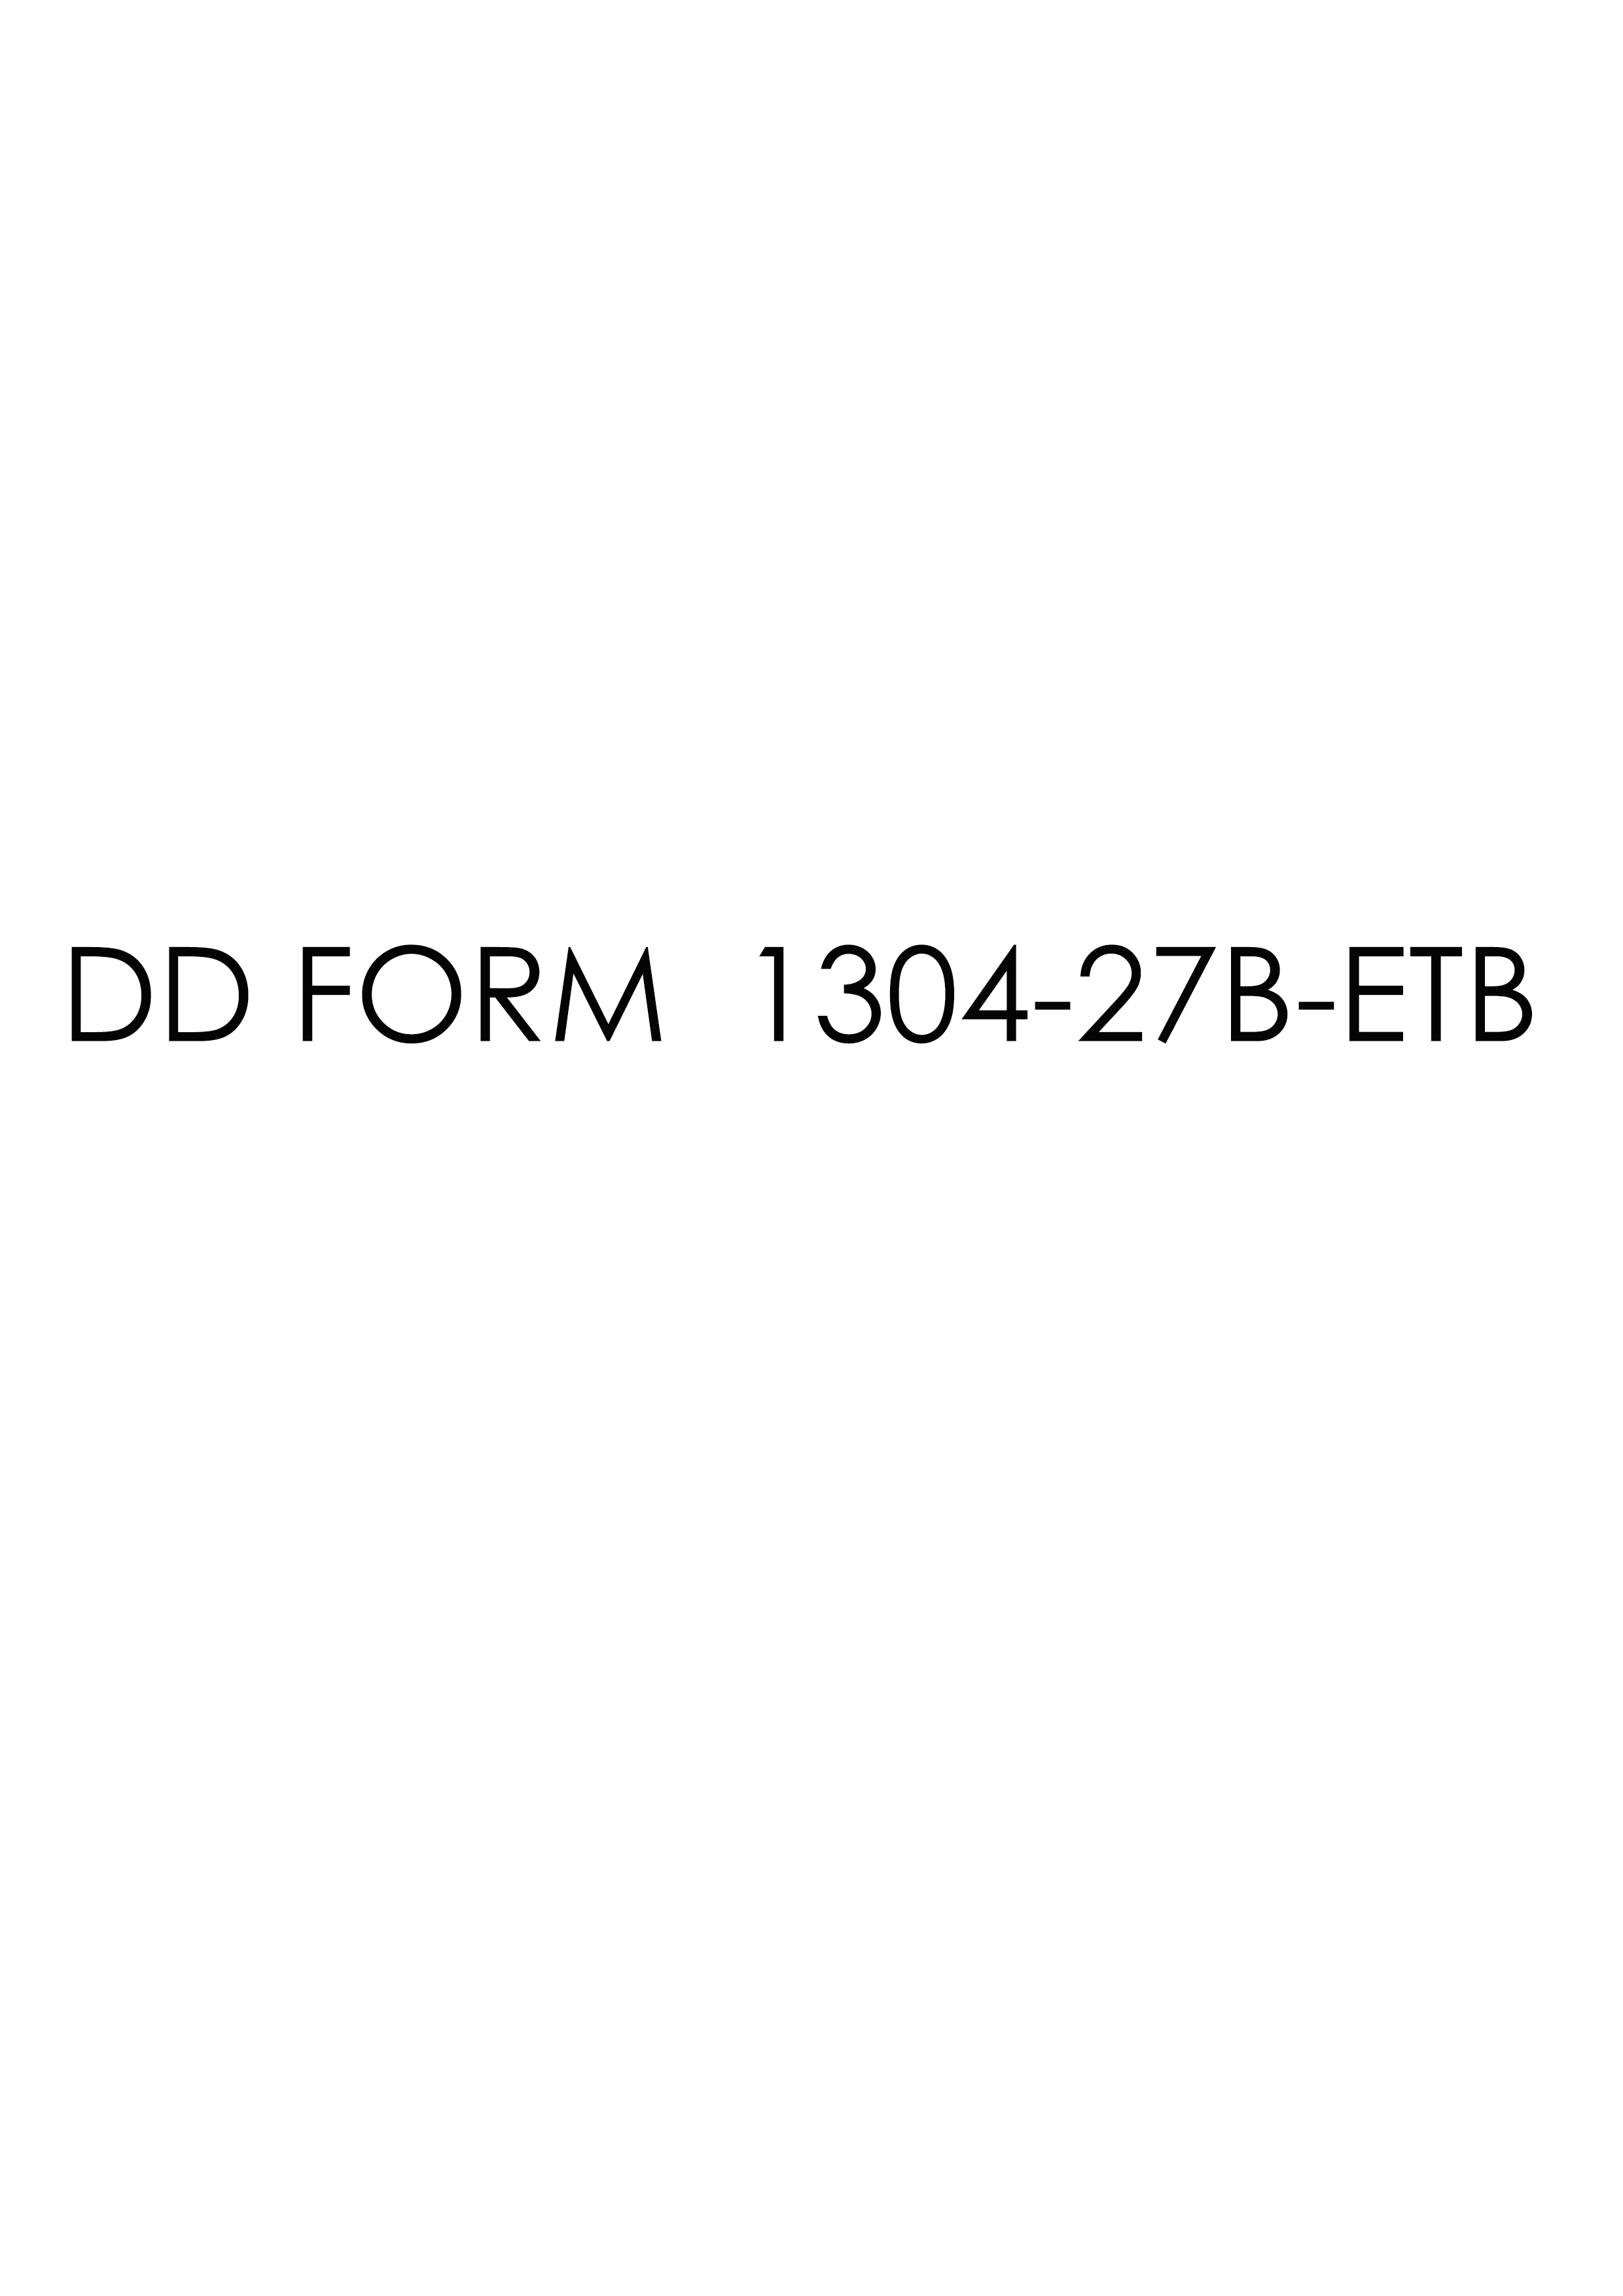 Download dd 1304-27B-ETB Form